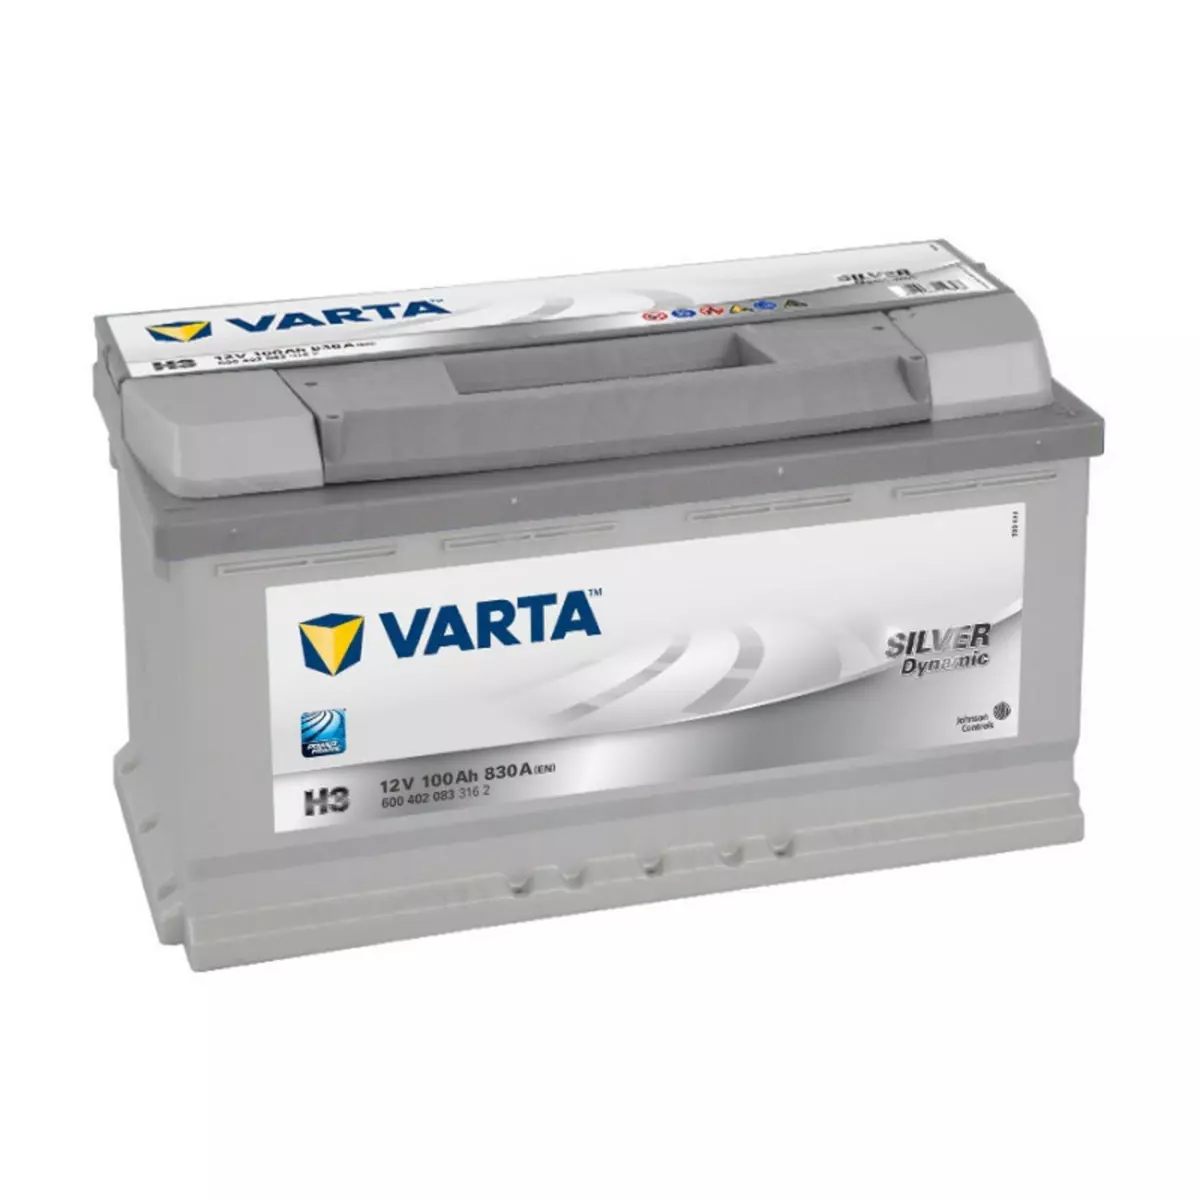 Varta Batterie Varta Silver Dynamic H3 12v 100ah 830A 600 402 083